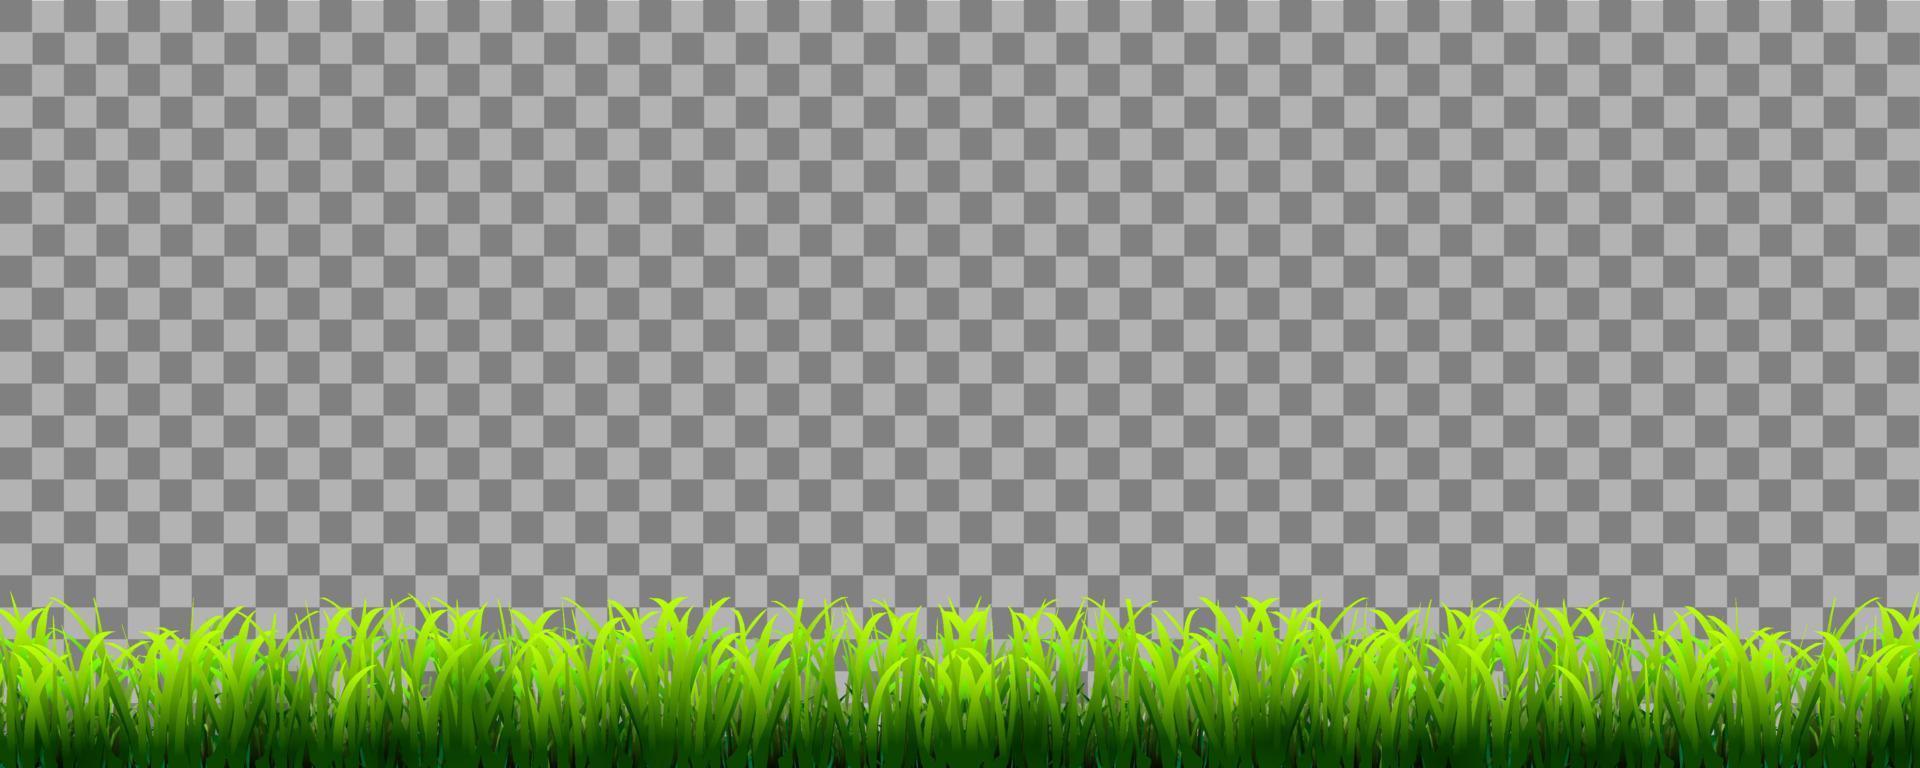 grönt realistiskt gräs gränsen isolerad på transparent bakgrund vektor